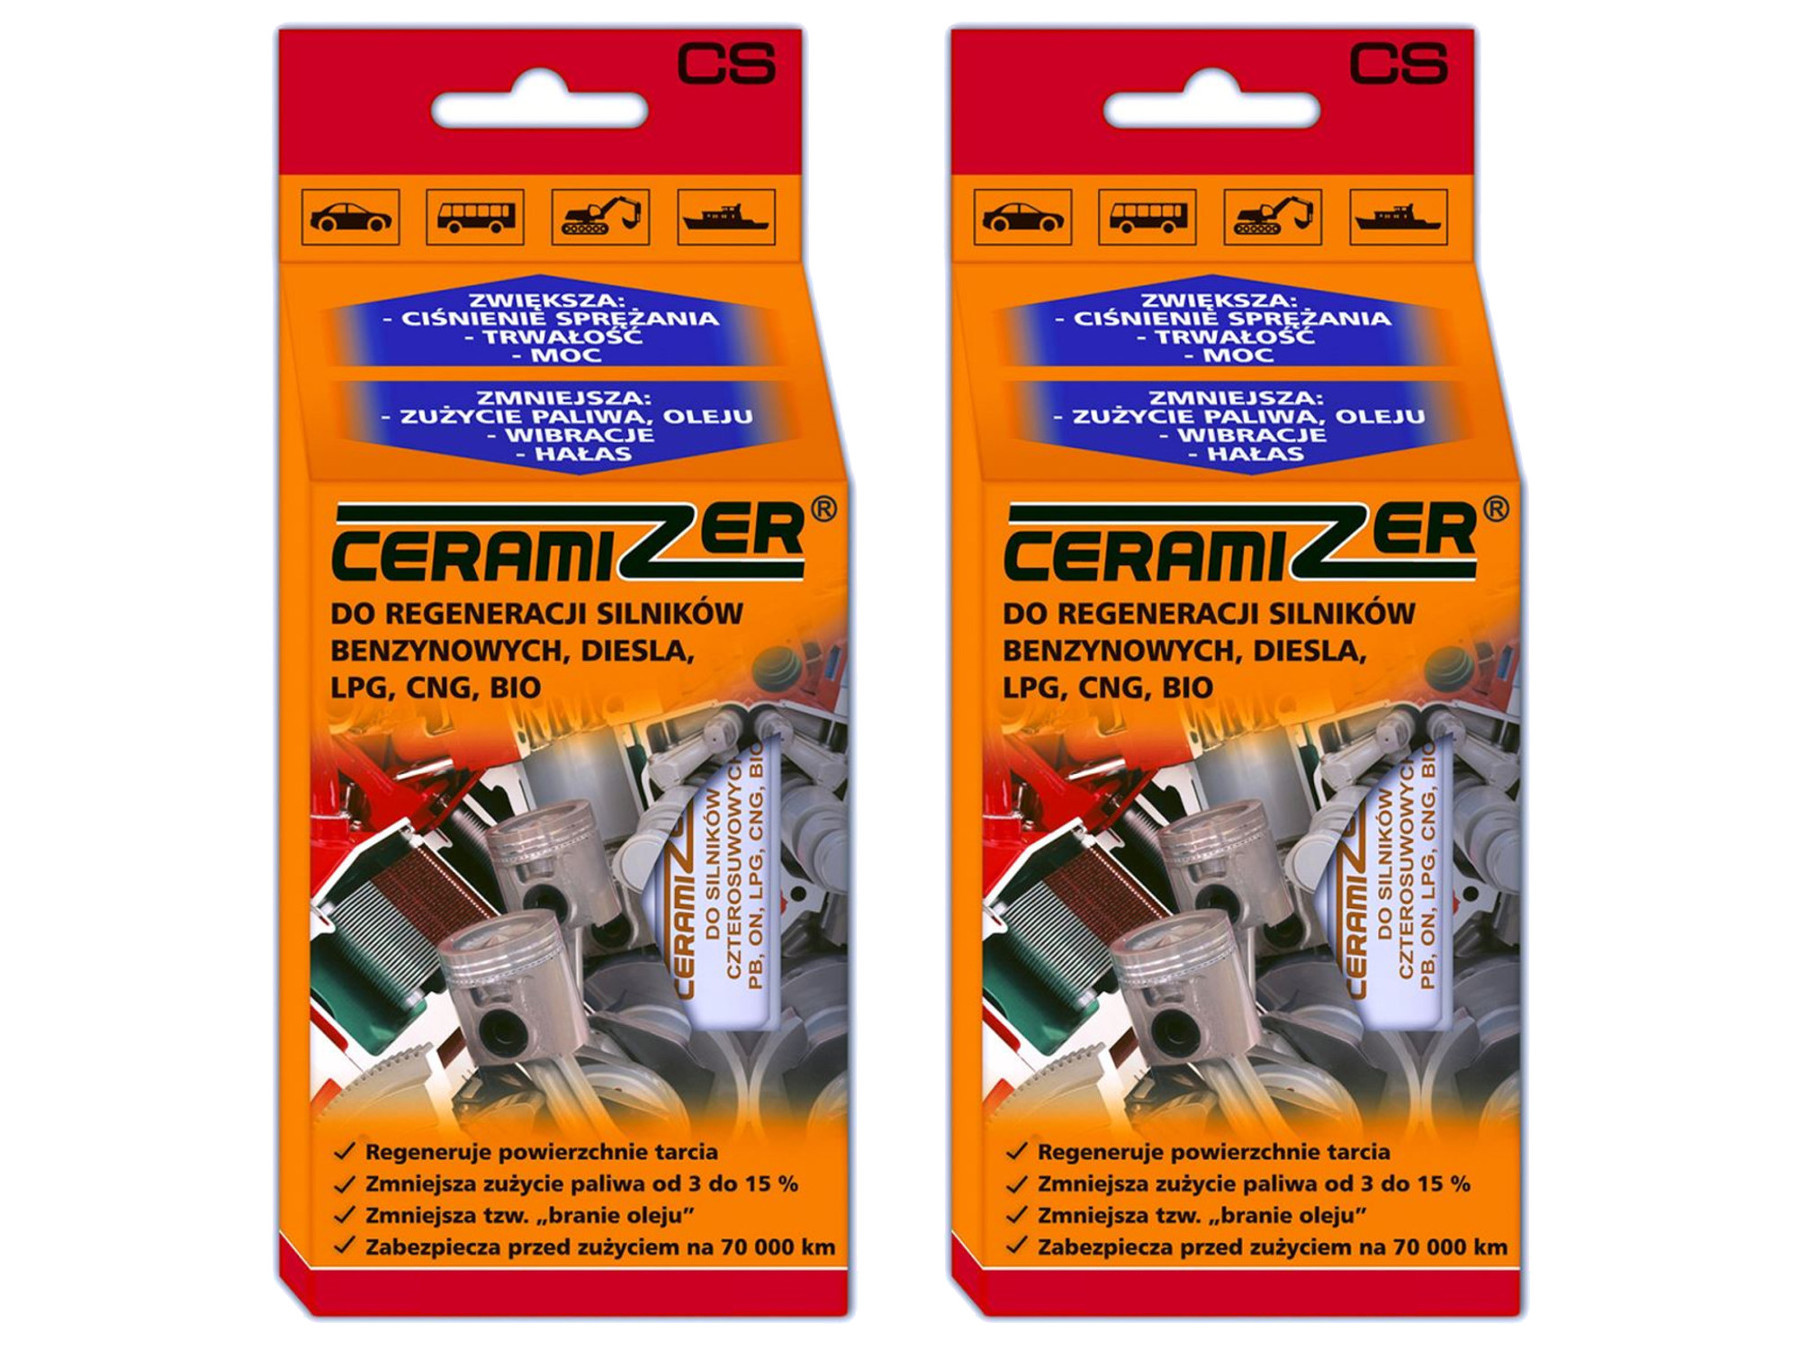 2 x original Ceramizer for CS engine